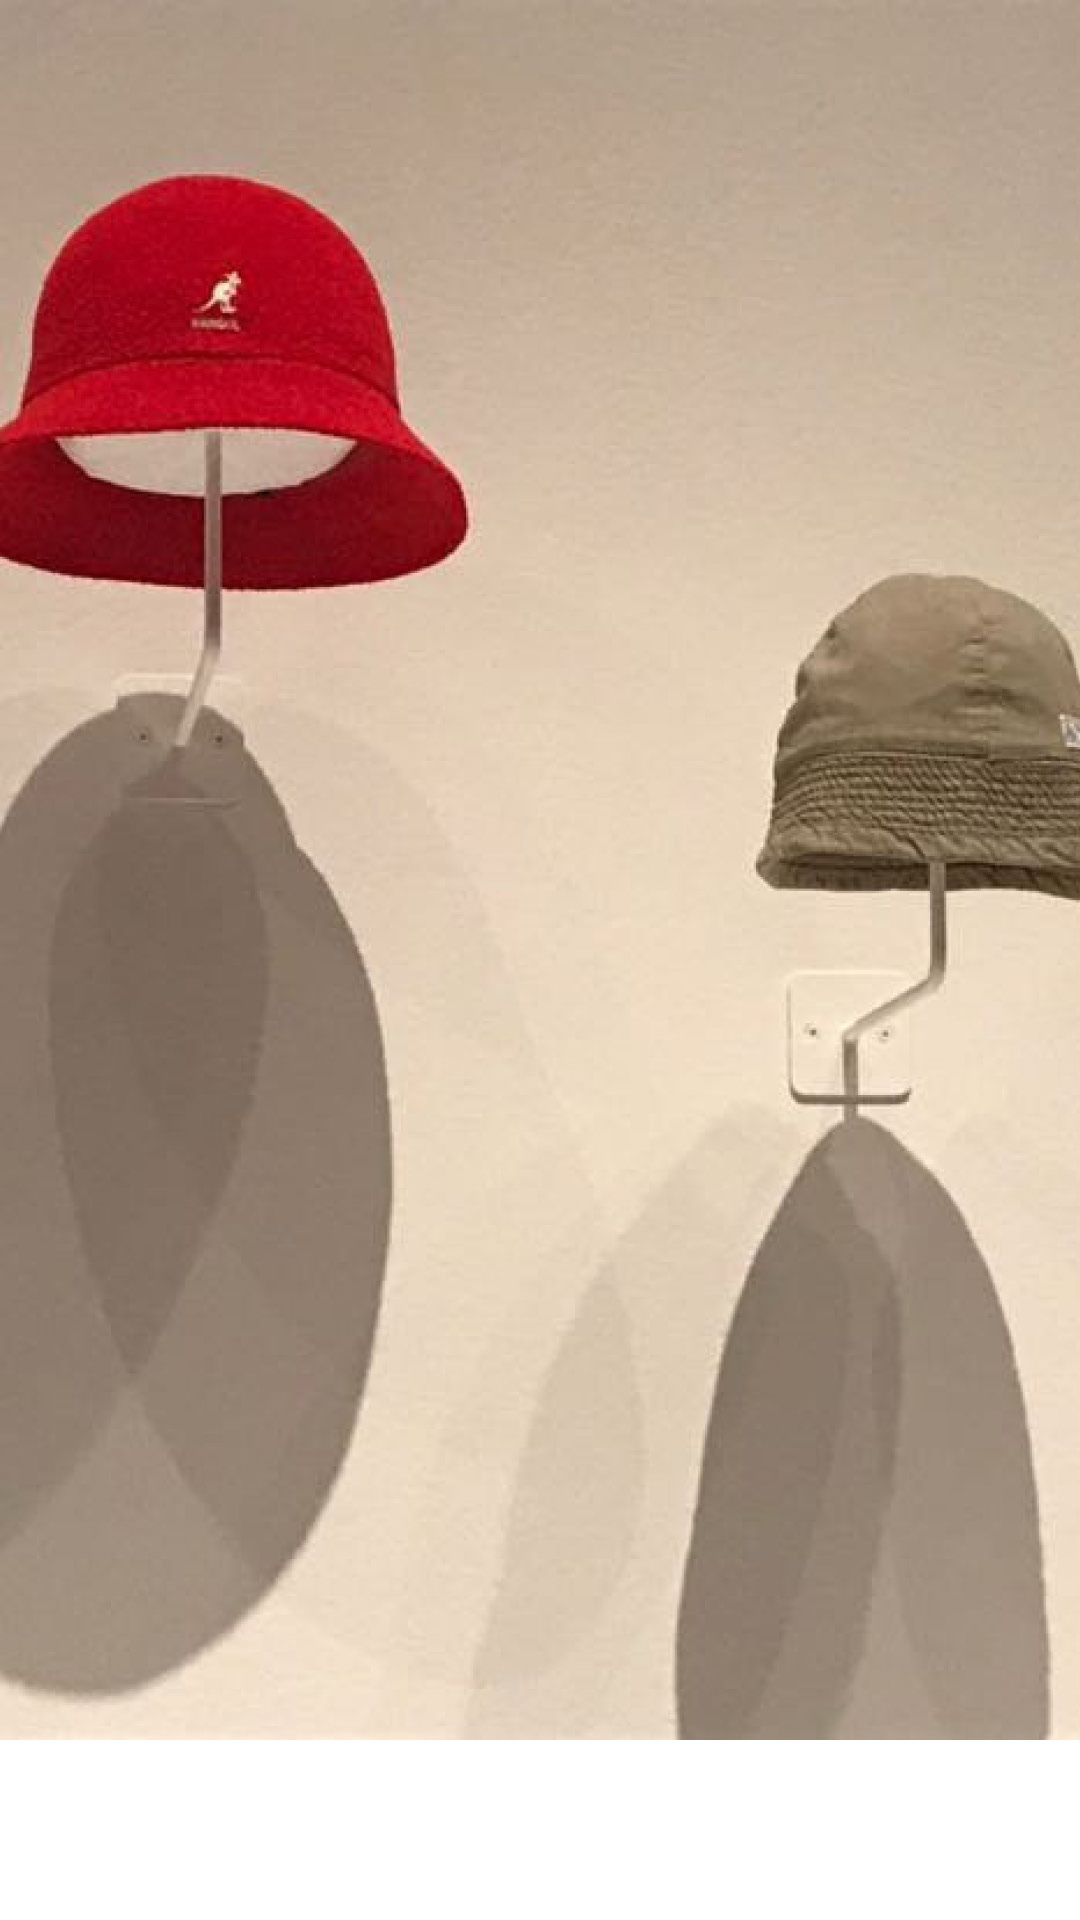 "כובע משנות ה-50 של המאה הקודמת שנשלח אחר כבוד לניו יורק". ()